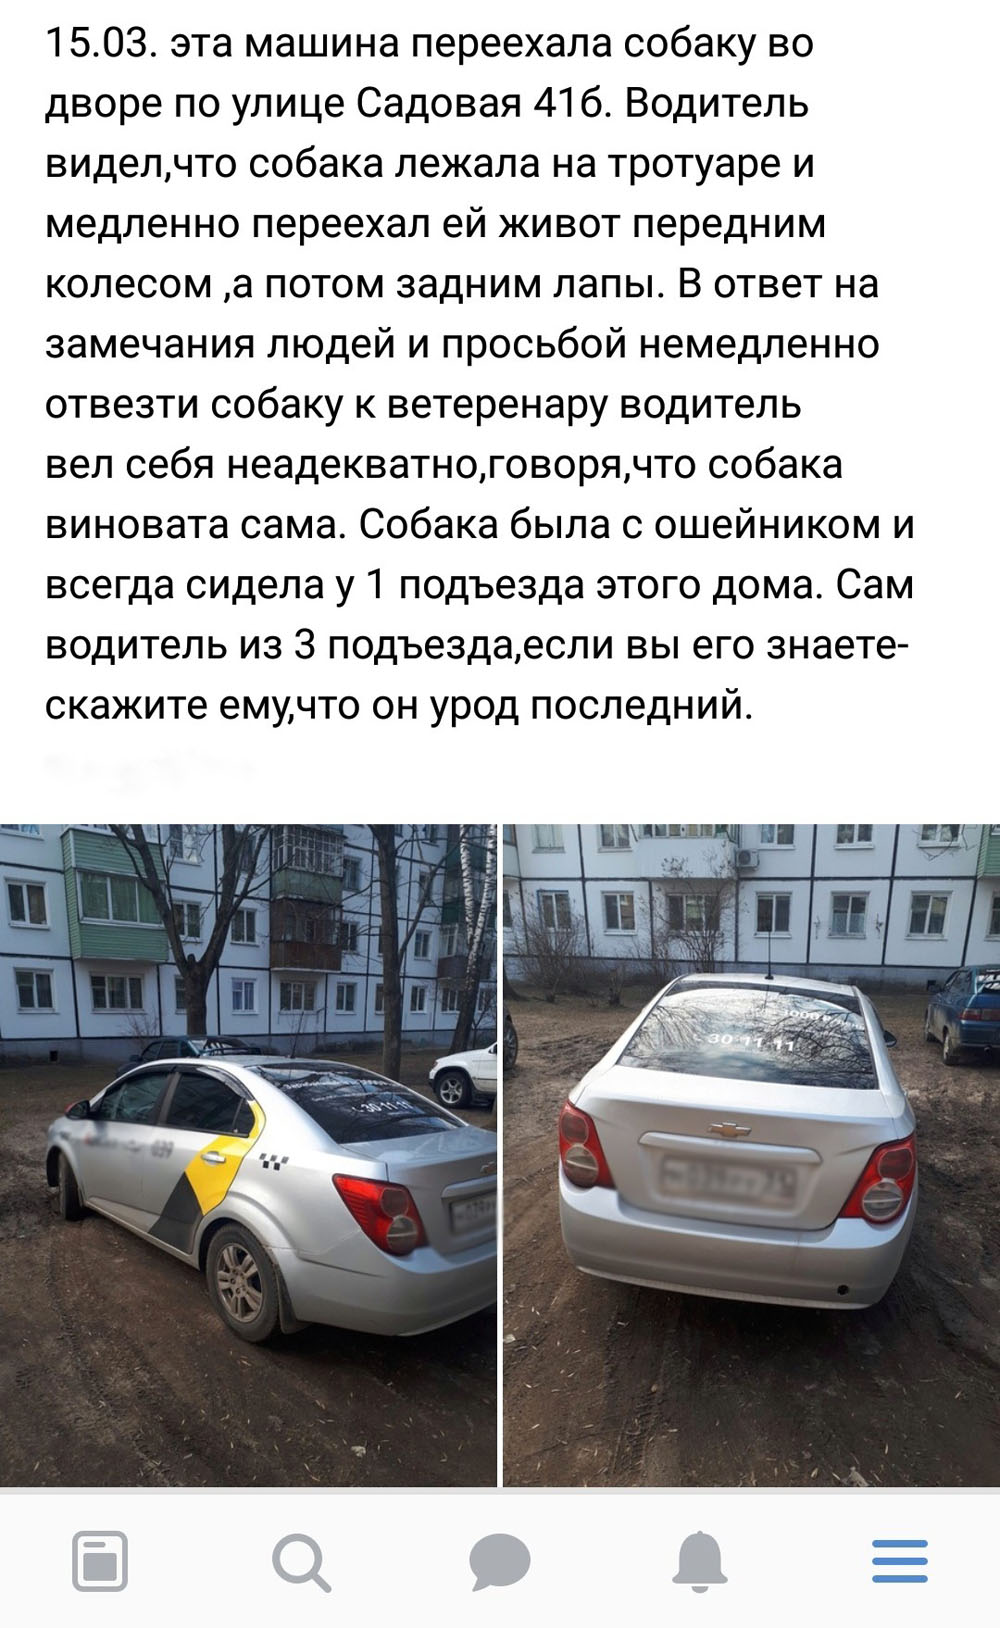 Новозыбковский таксист, сбивший собаку, отказался ей помочь